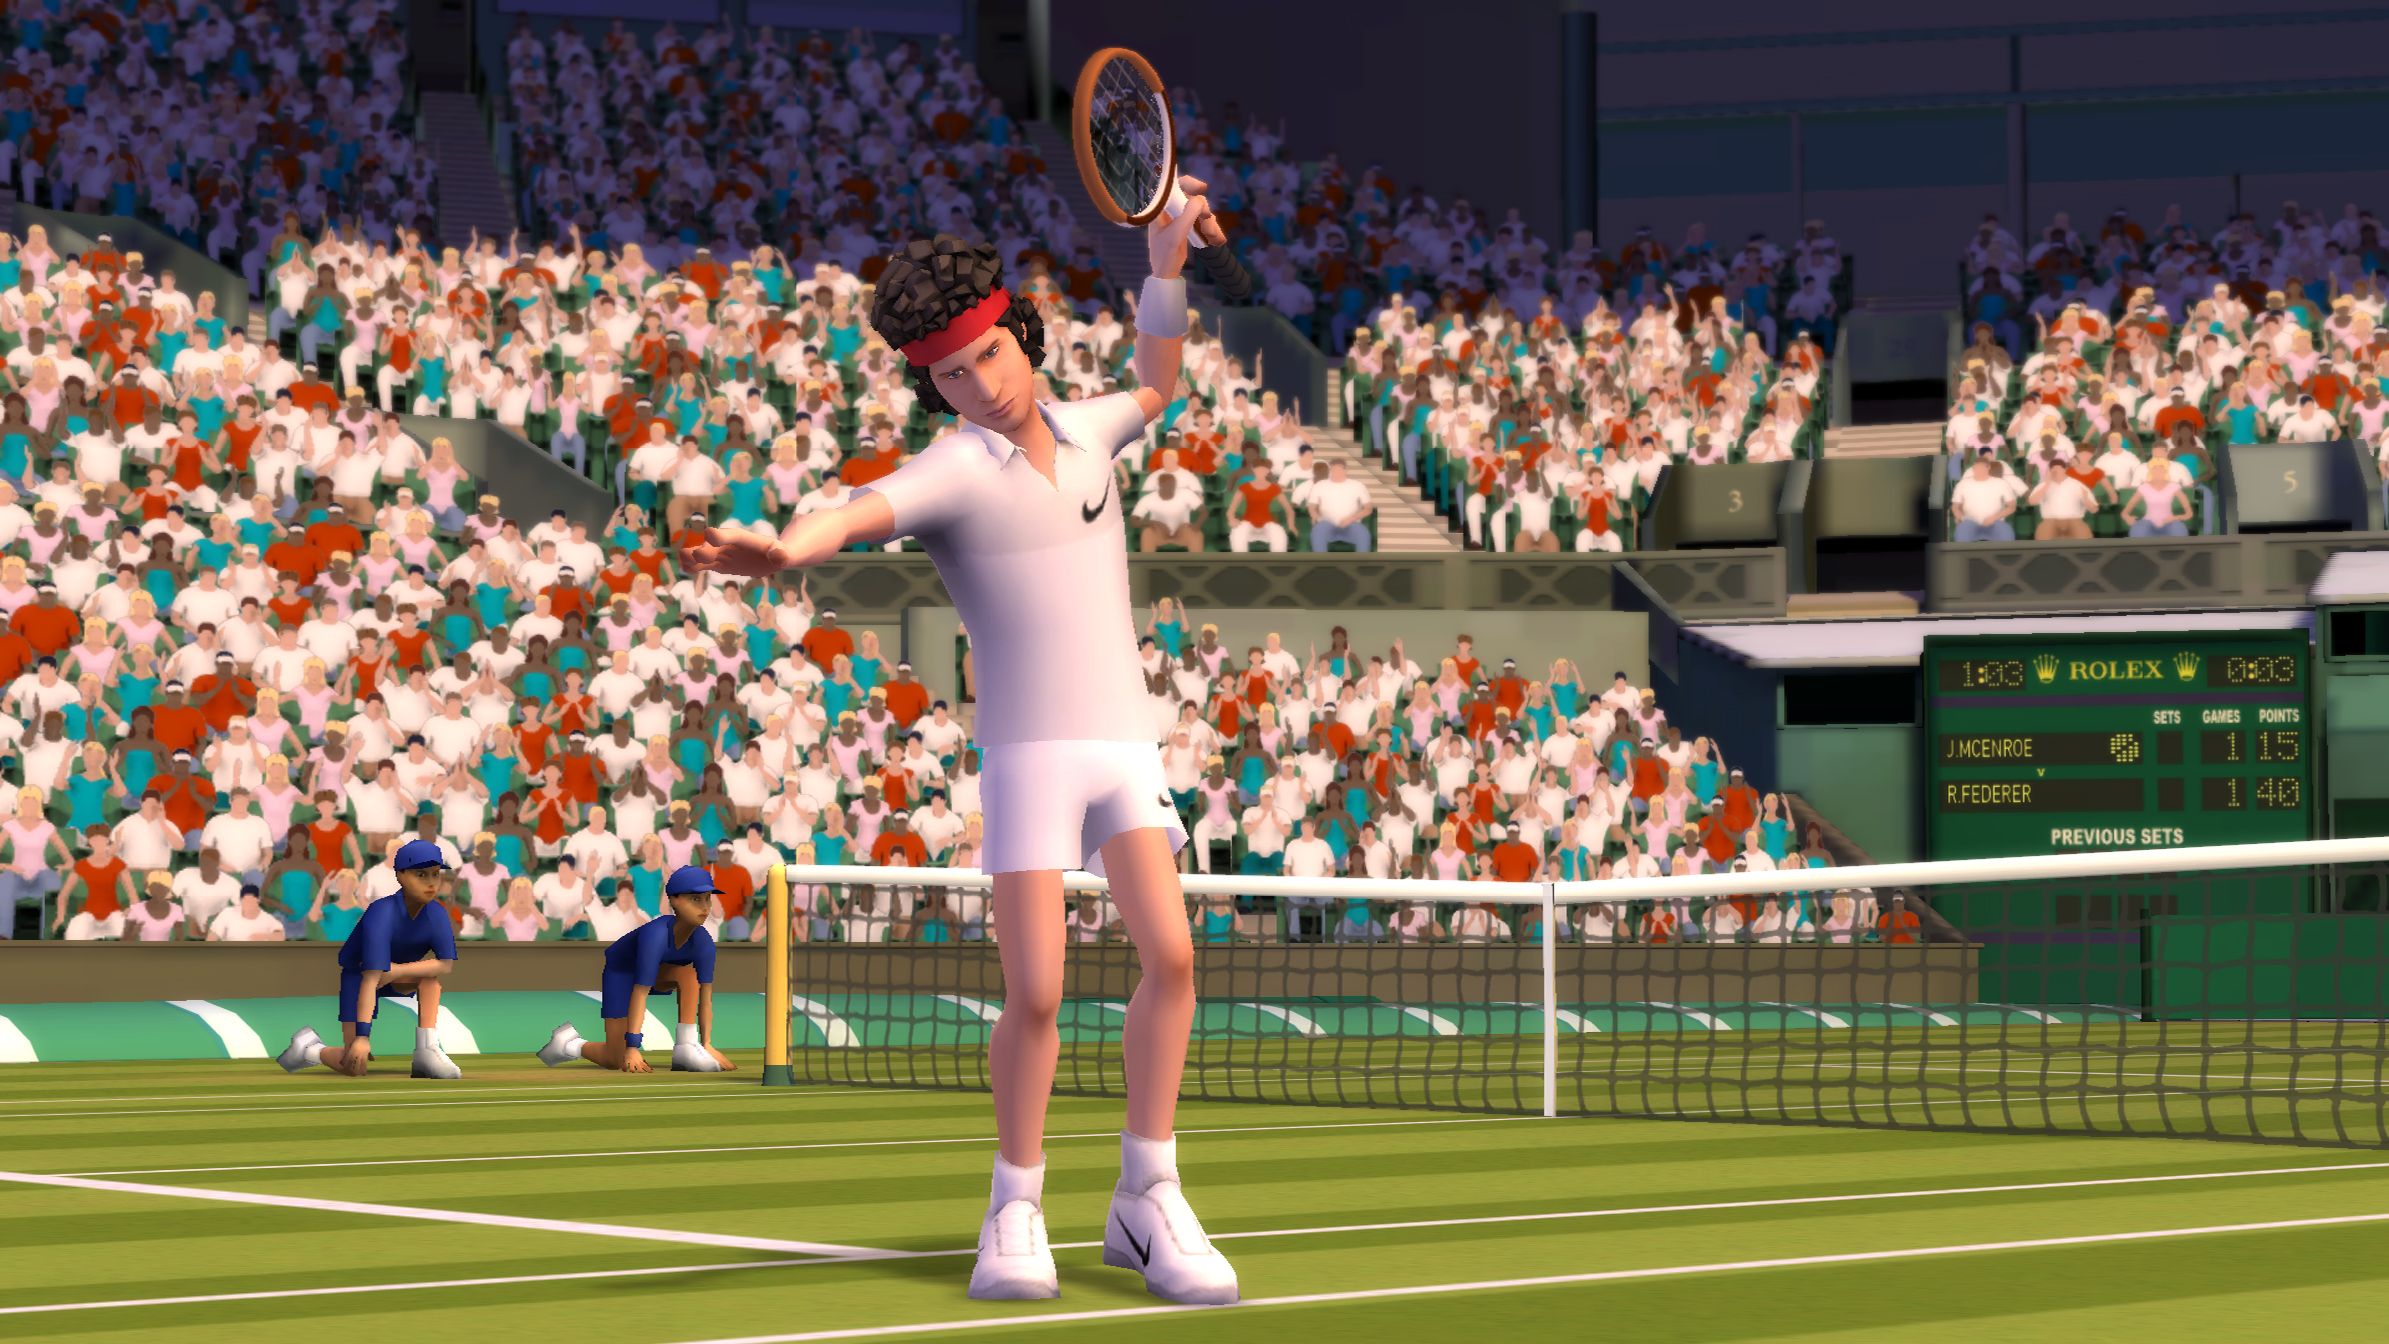 Партия игры в теннисе